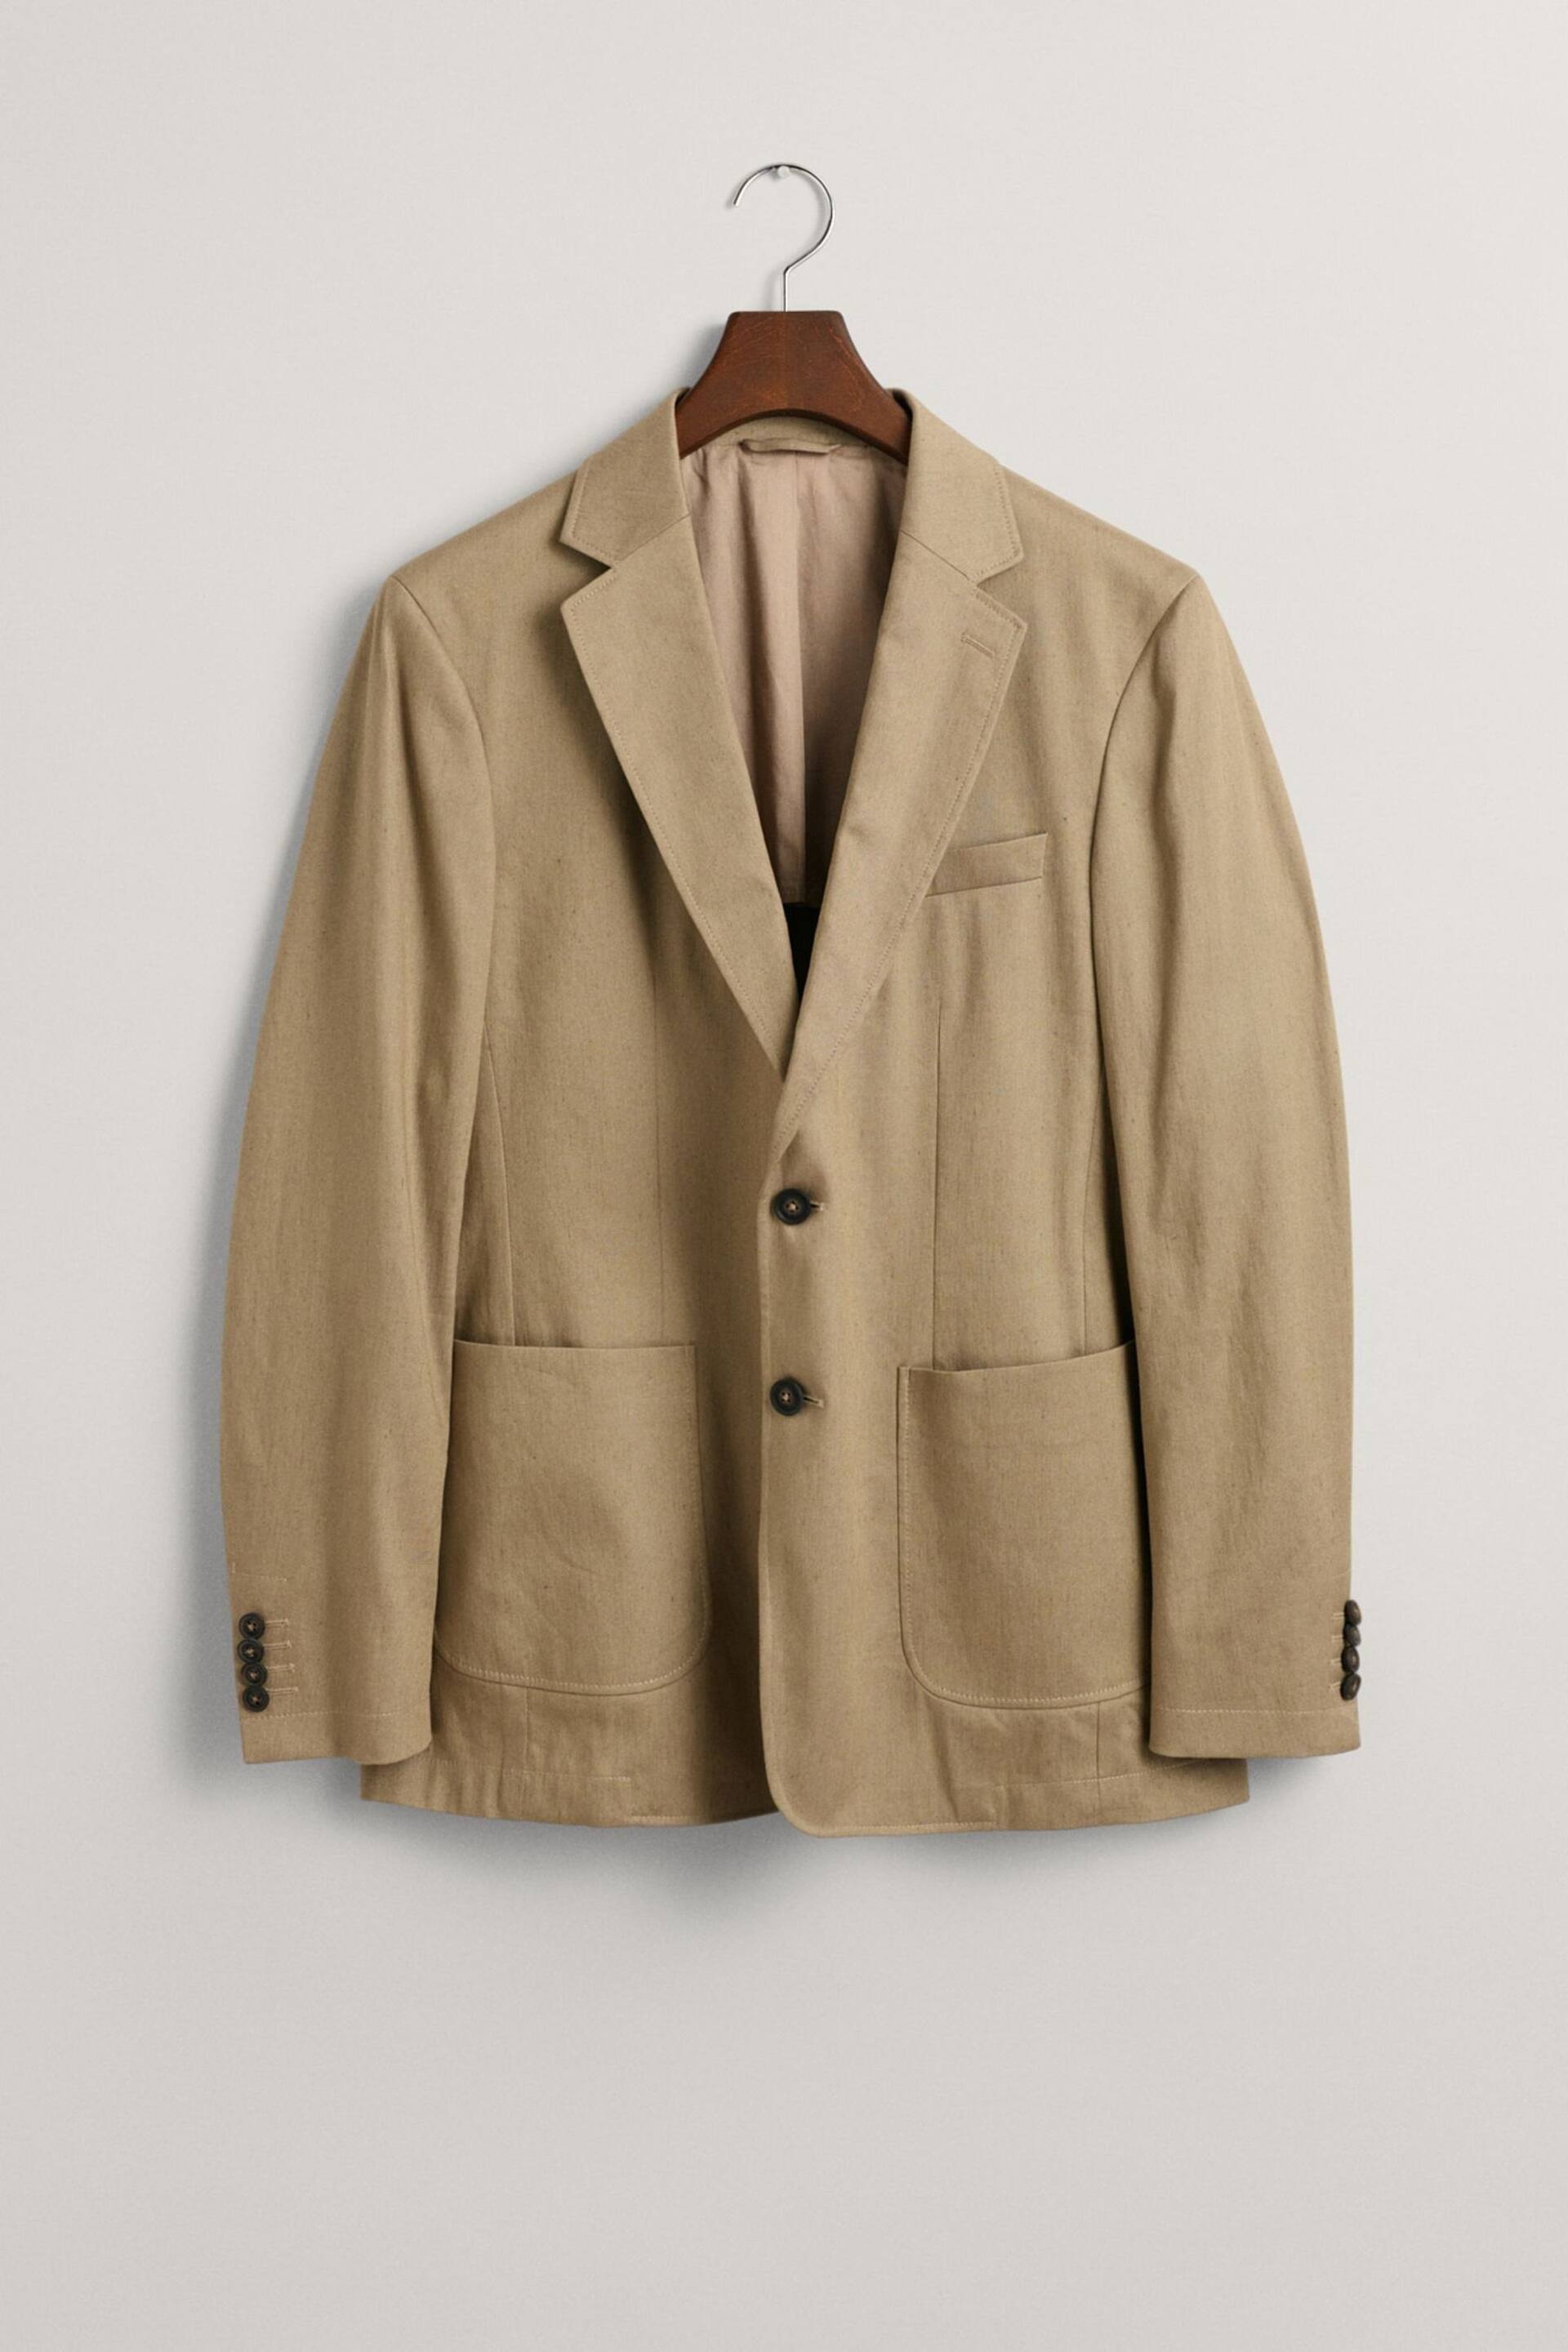 GANT Brown Slim Fit Cotton Linen Blazer - Image 6 of 6